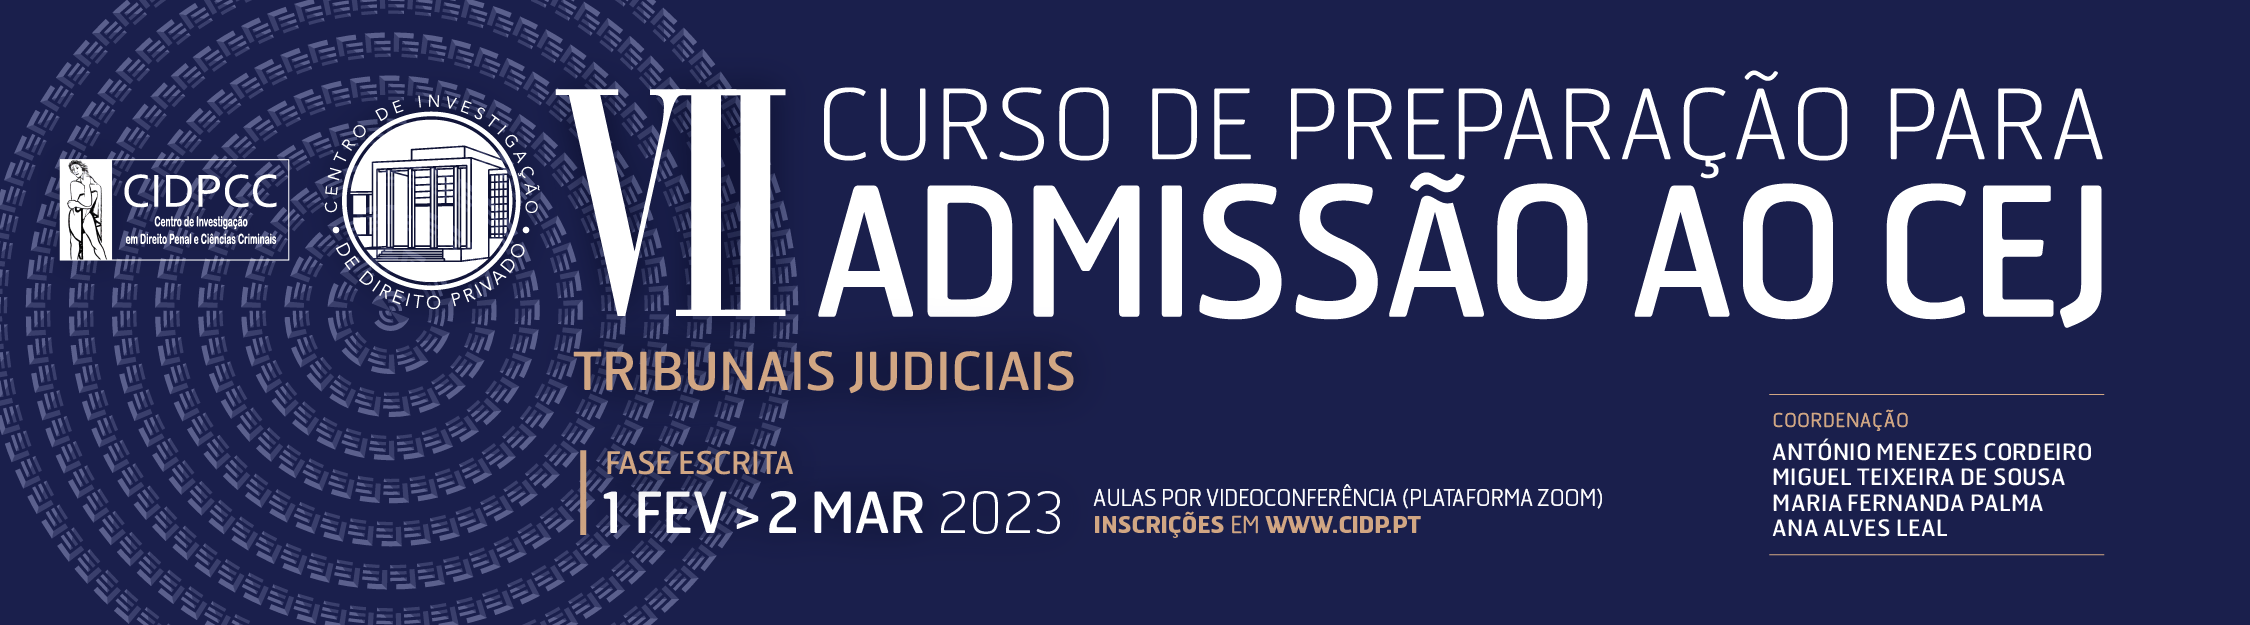 VII Curso Intensivo de Preparação para Admissão ao CEJ – Tribunais Judiciais